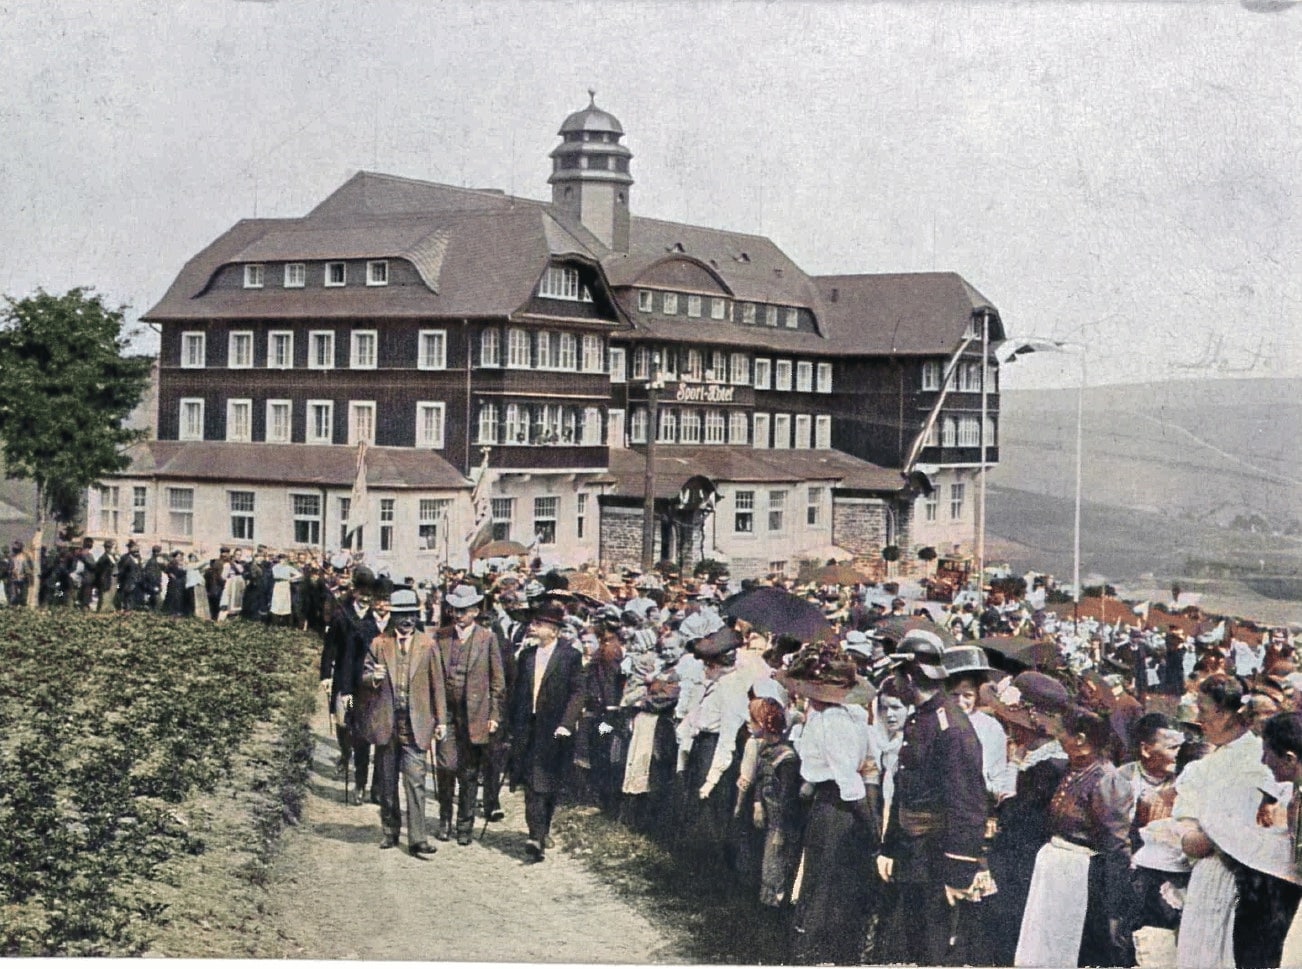 Das Sporthotel wurde um 1911 direkt am Fuße des Fichtelberges im Reform-Stil errichtet. Die Architekten waren E. Baschant, C. E. Böhm und Paul Burghardt.